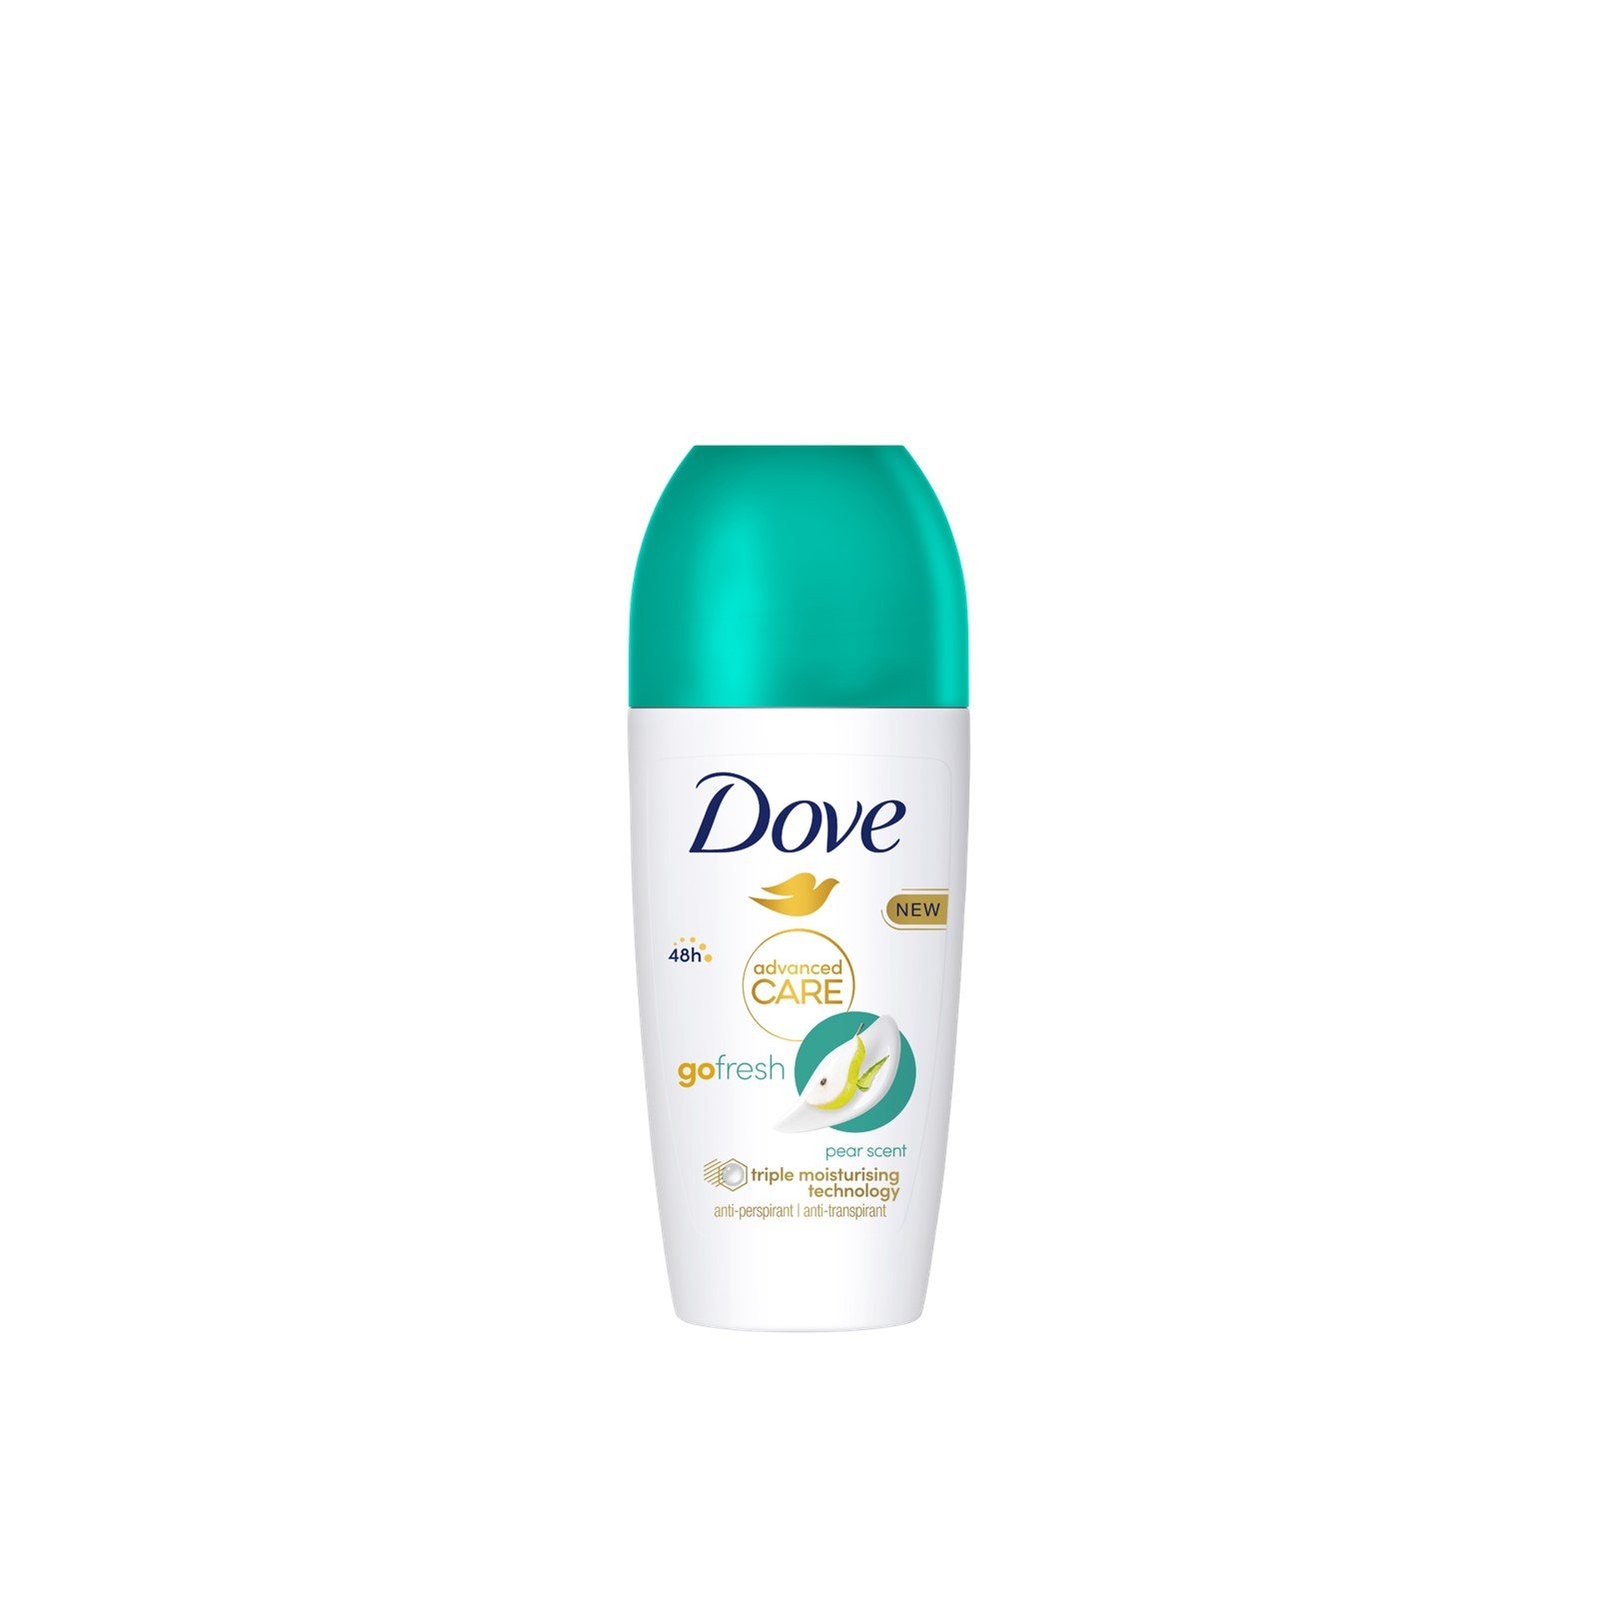 Dove Advanced Care Go Fresh Pear Scent 48h Anti-Perspirant Deodorant Roll-On 50ml (1.69 fl oz)